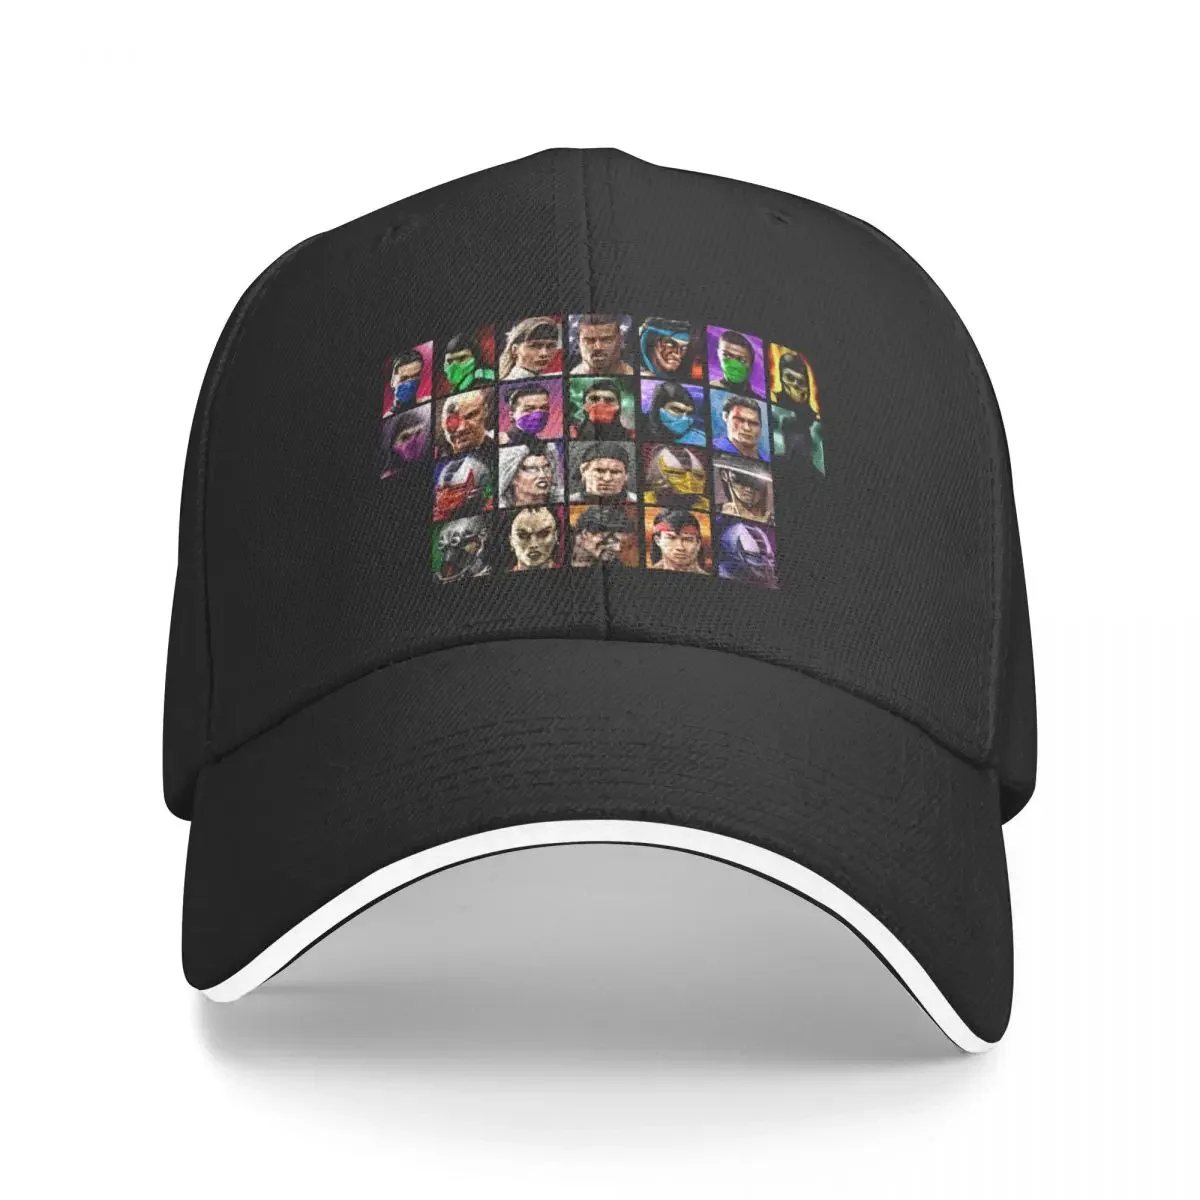 

Новинка Ultimate Mortal Kombat 3-Специальный бойцов-видеоигра (Ретро) незаменимая футболка бейсболка кепка хип-хоп шляпа мужская женская